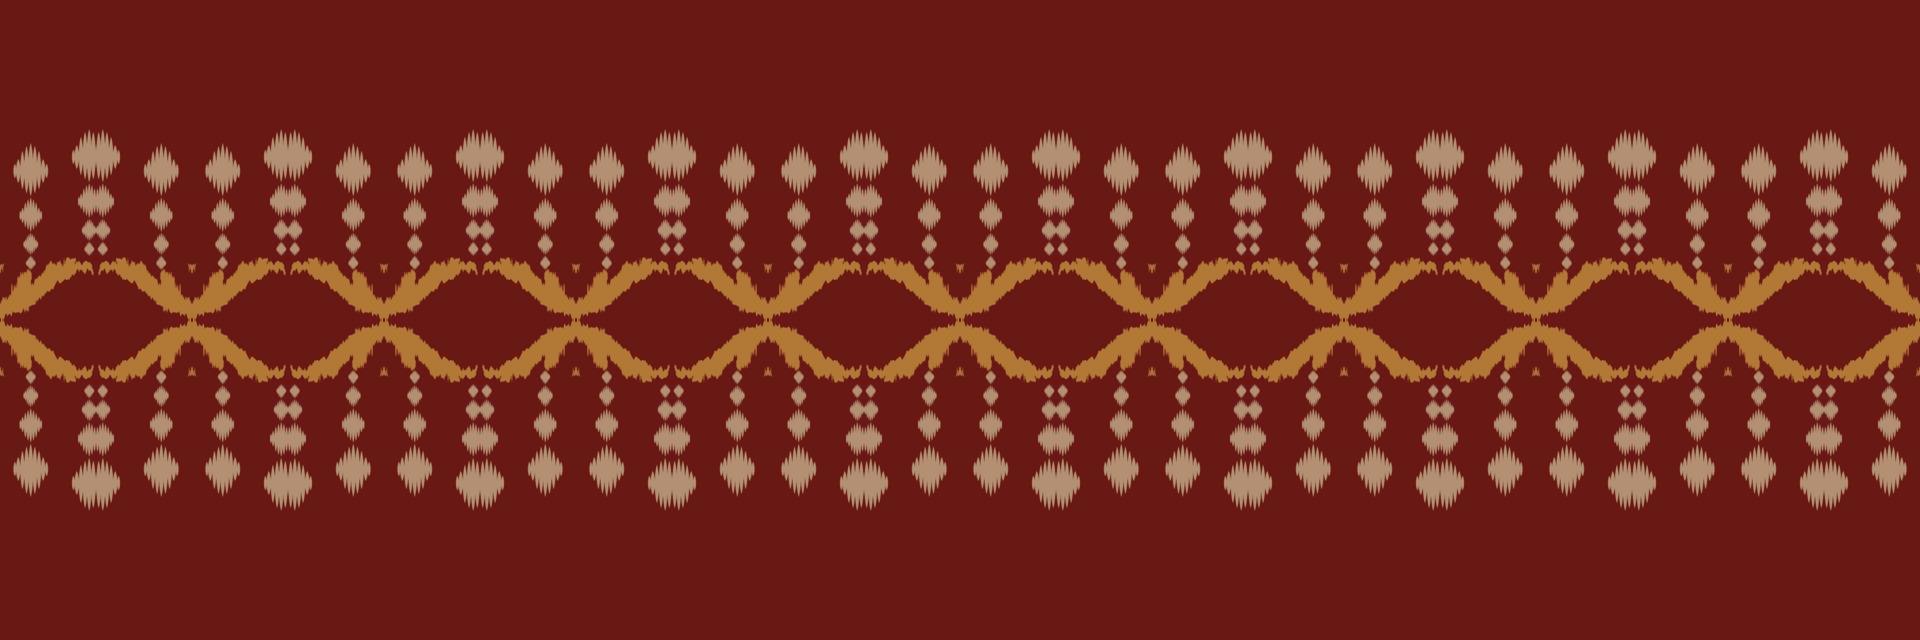 padrão sem emenda da áfrica tribal da listra de ikat. étnico geométrico batik ikkat design têxtil de vetor digital para estampas tecido saree mughal pincel símbolo faixas textura kurti kurtis kurtas